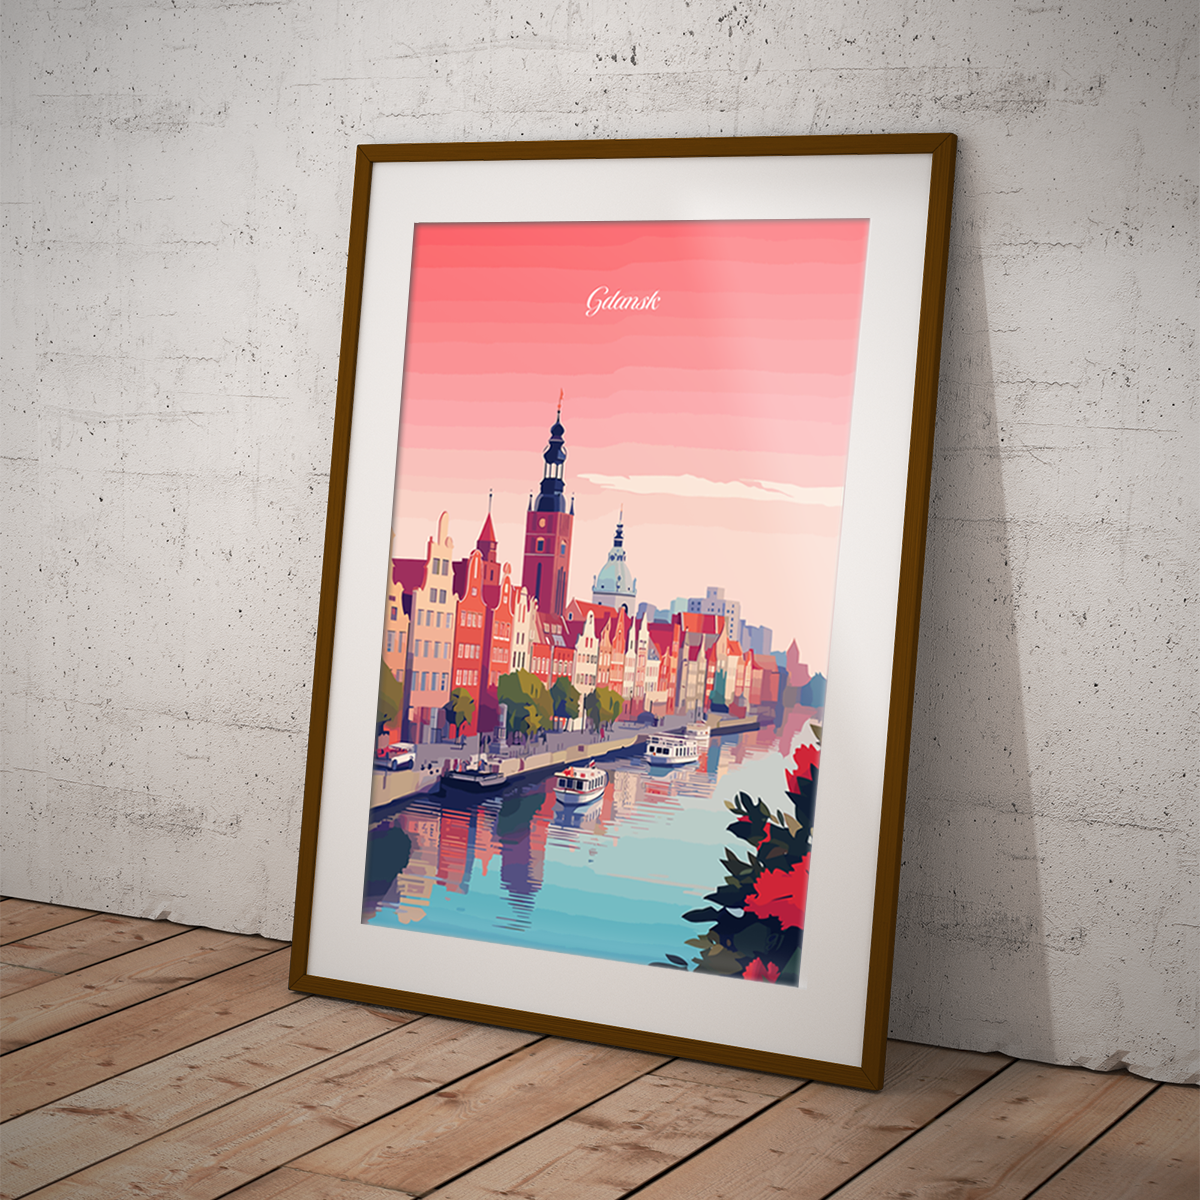 Gdansk poster by bon voyage design